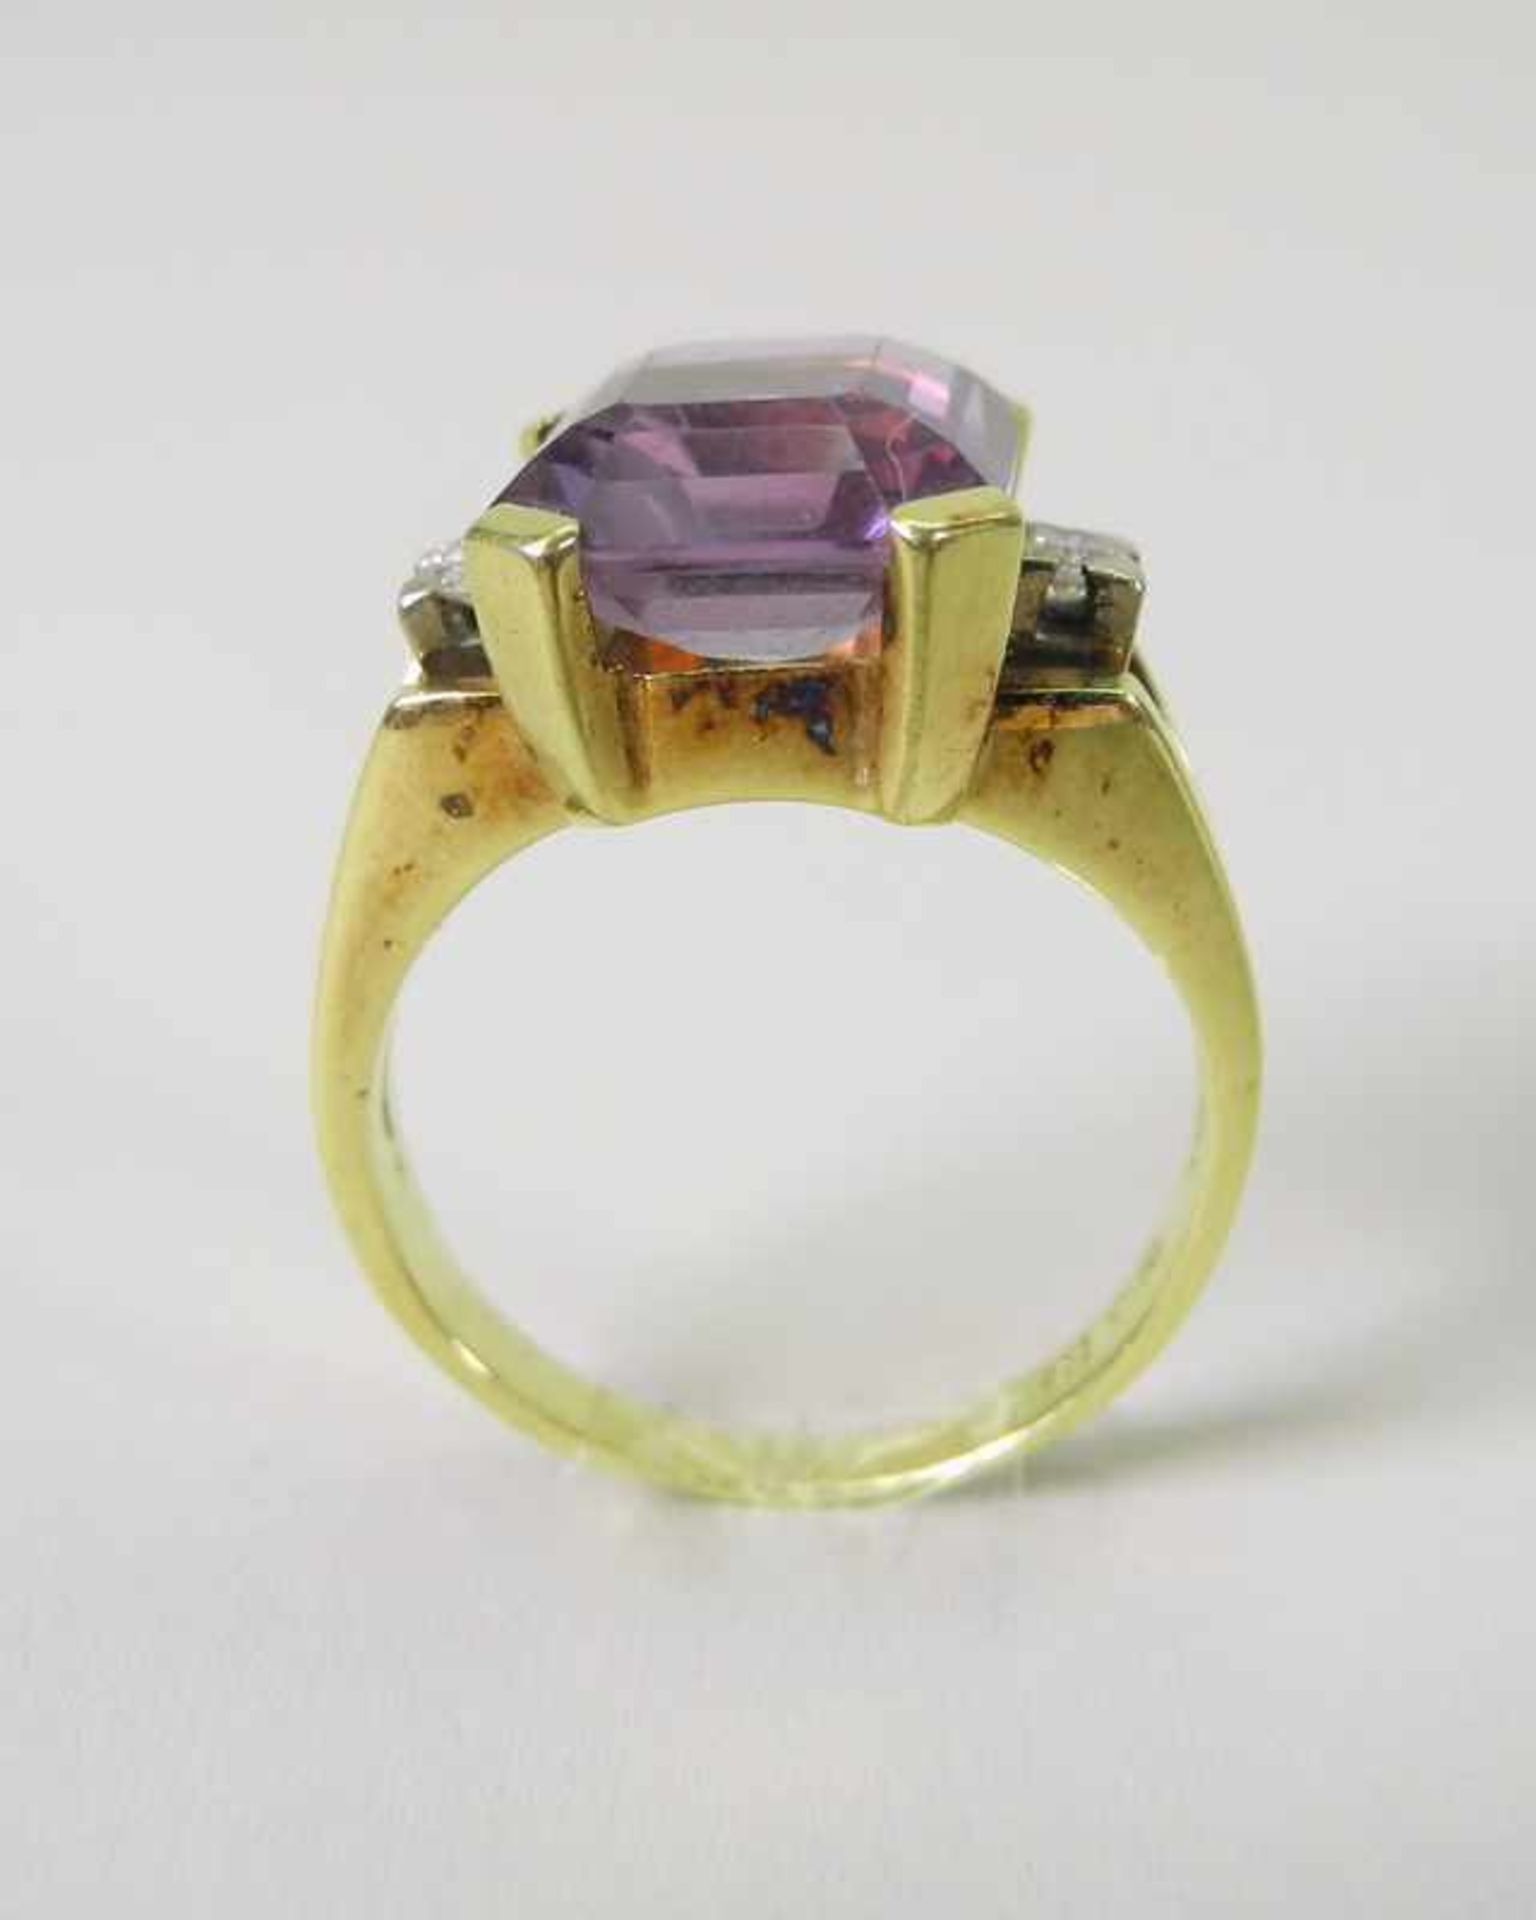 Farbstein-Diamant-Ring14 K. gelbgoldener Ring mit lilanem Farbstein-Besatz sowie 2 kleinen Diamanten - Image 3 of 5